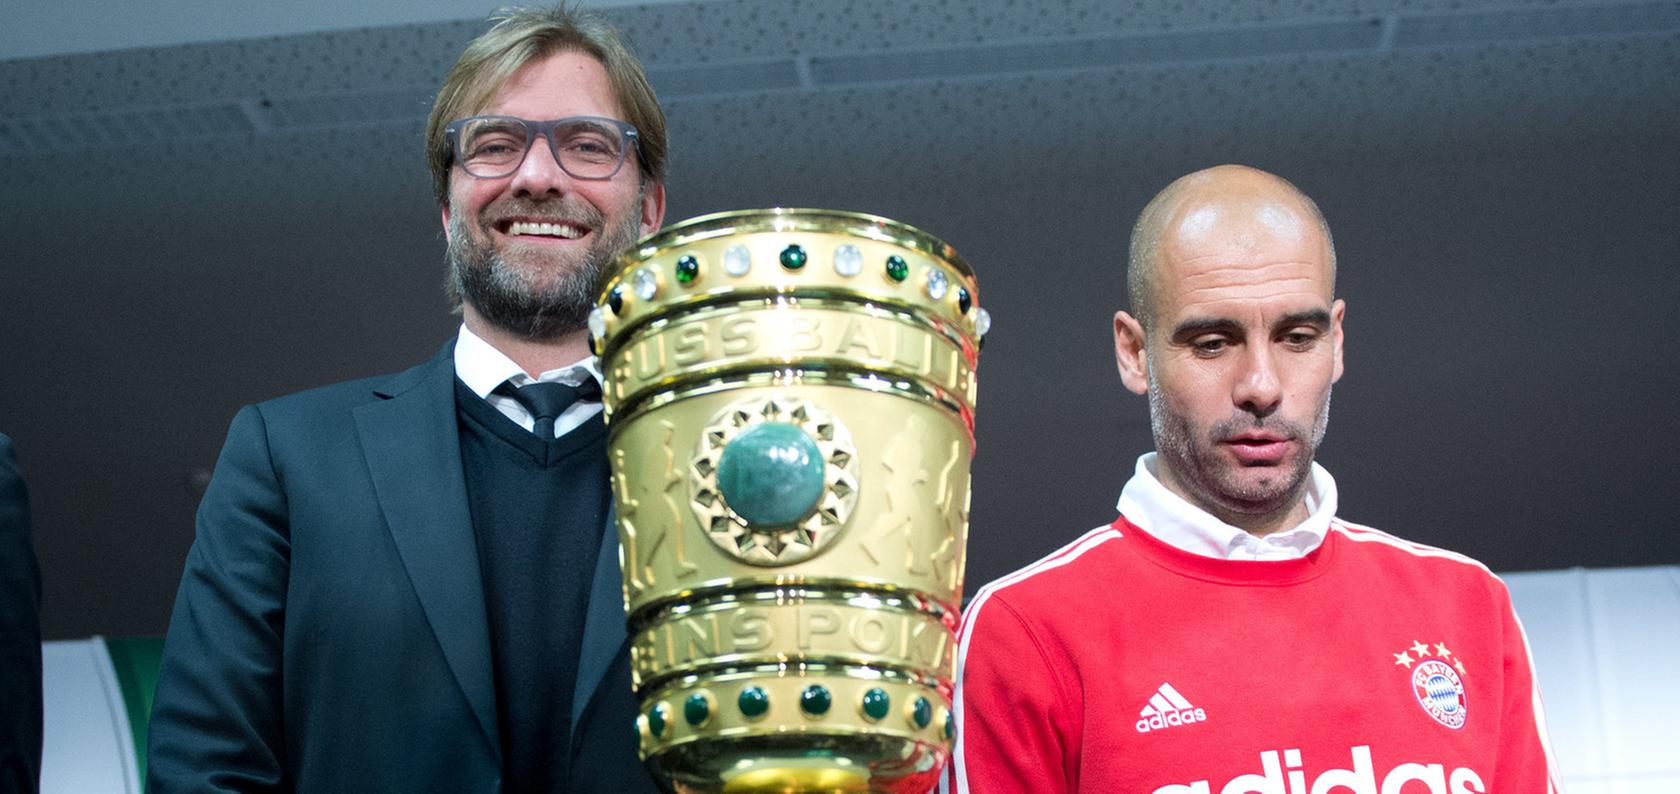 2014 trafen sich Jürgen Klopp und Pep Guardiola zum Pokal-Showdown in Berlin. Diesmal begegnen sich die Trainer im Cup-Wettbewerb im Halbfinale.